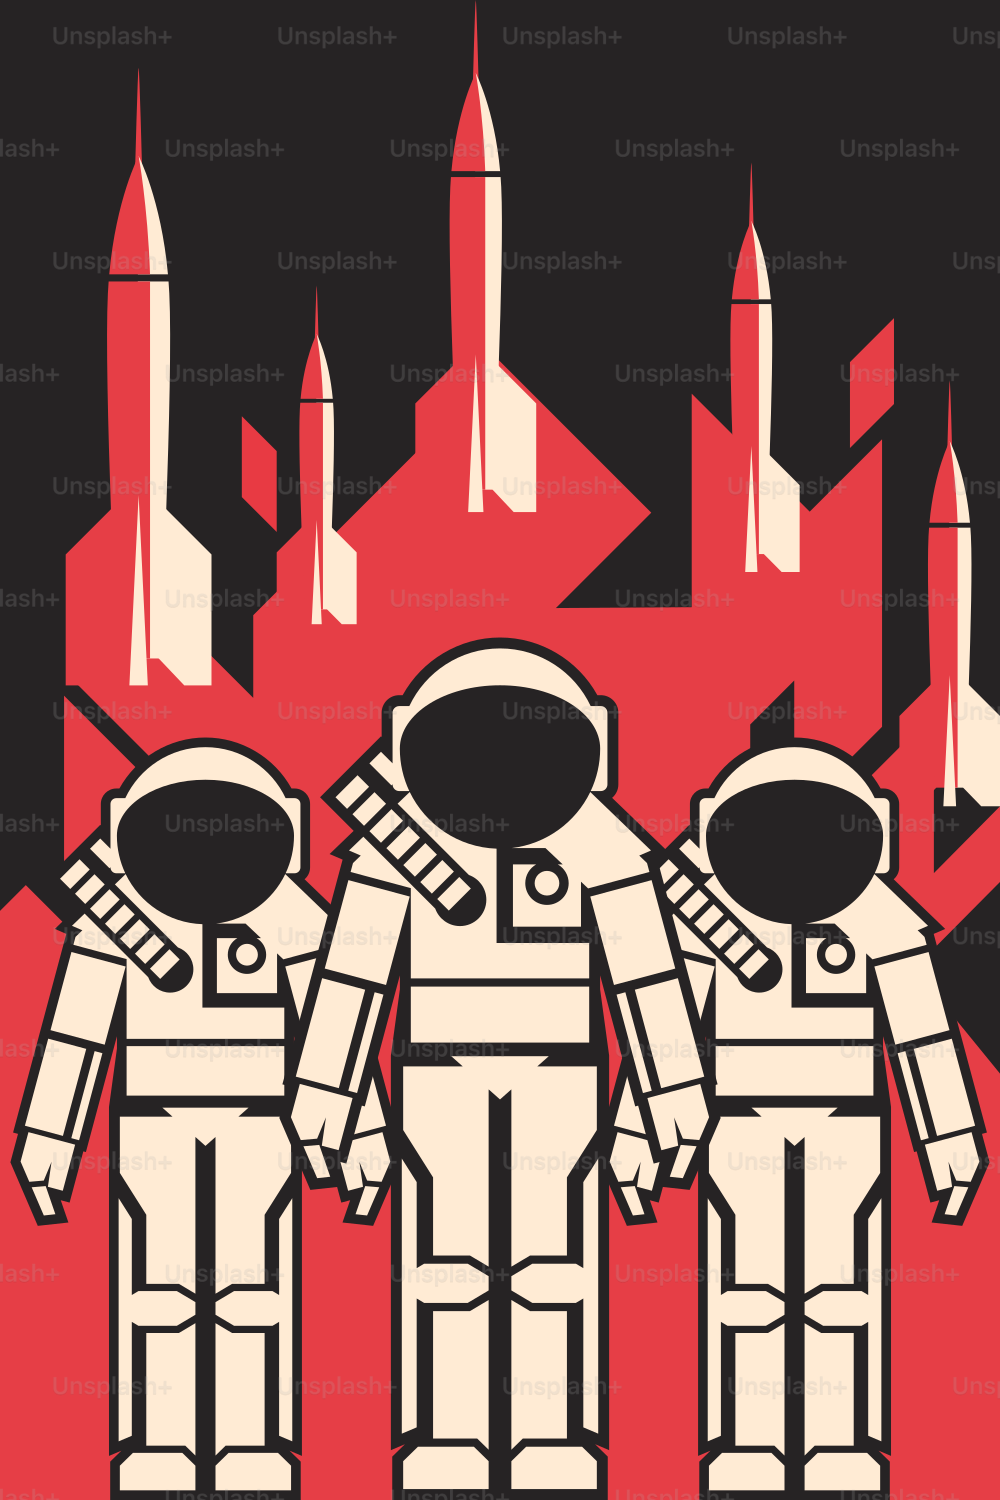 Tres astraonautas en trajes espaciales contra el fondo con transbordadores espaciales listos para comenzar